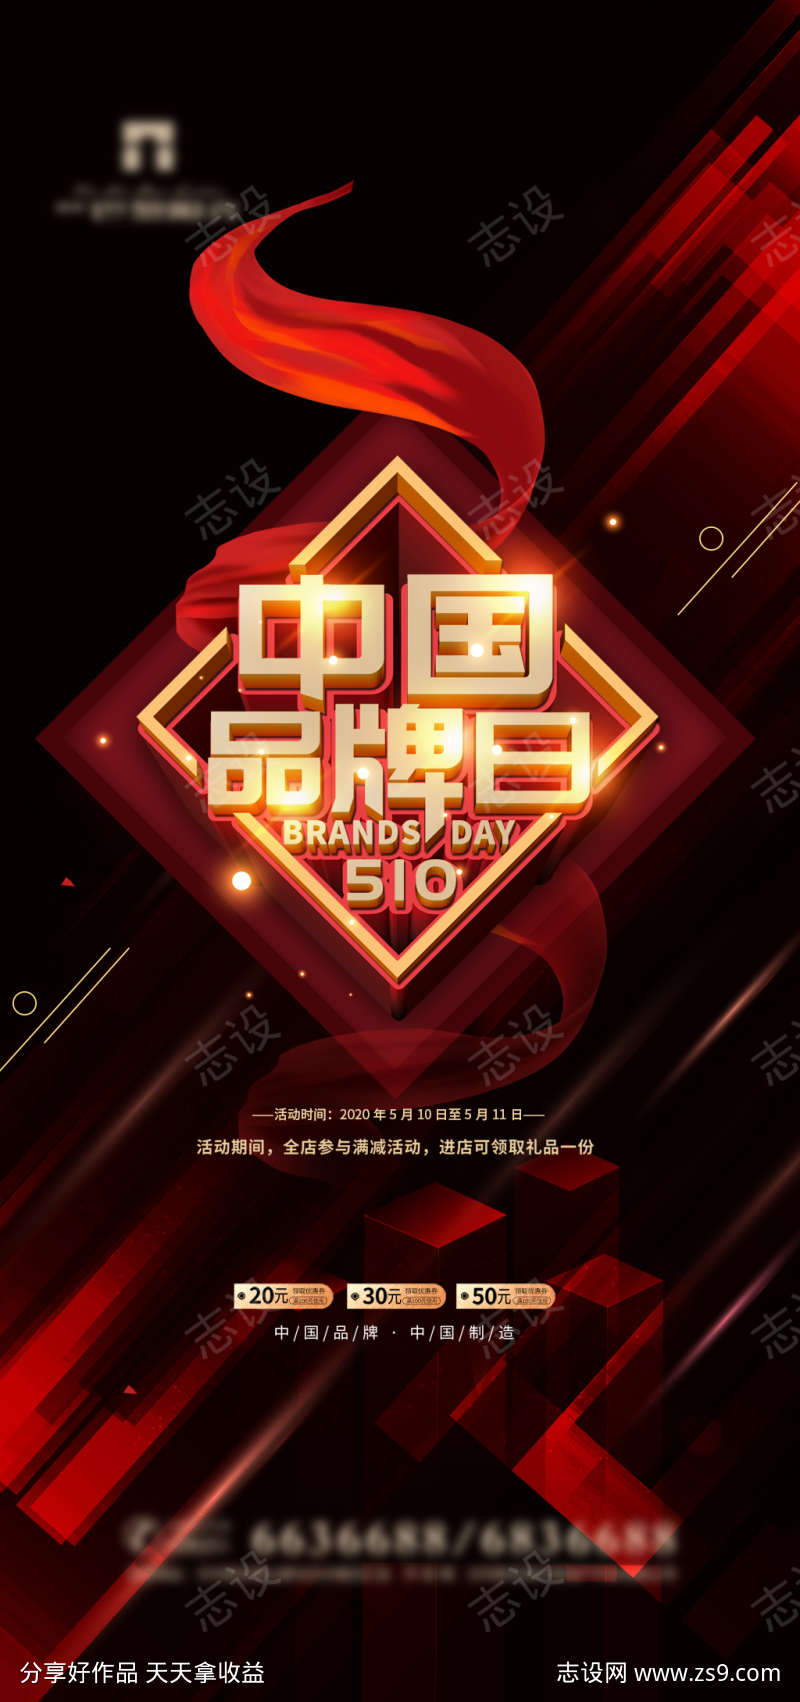 中国品牌日海报